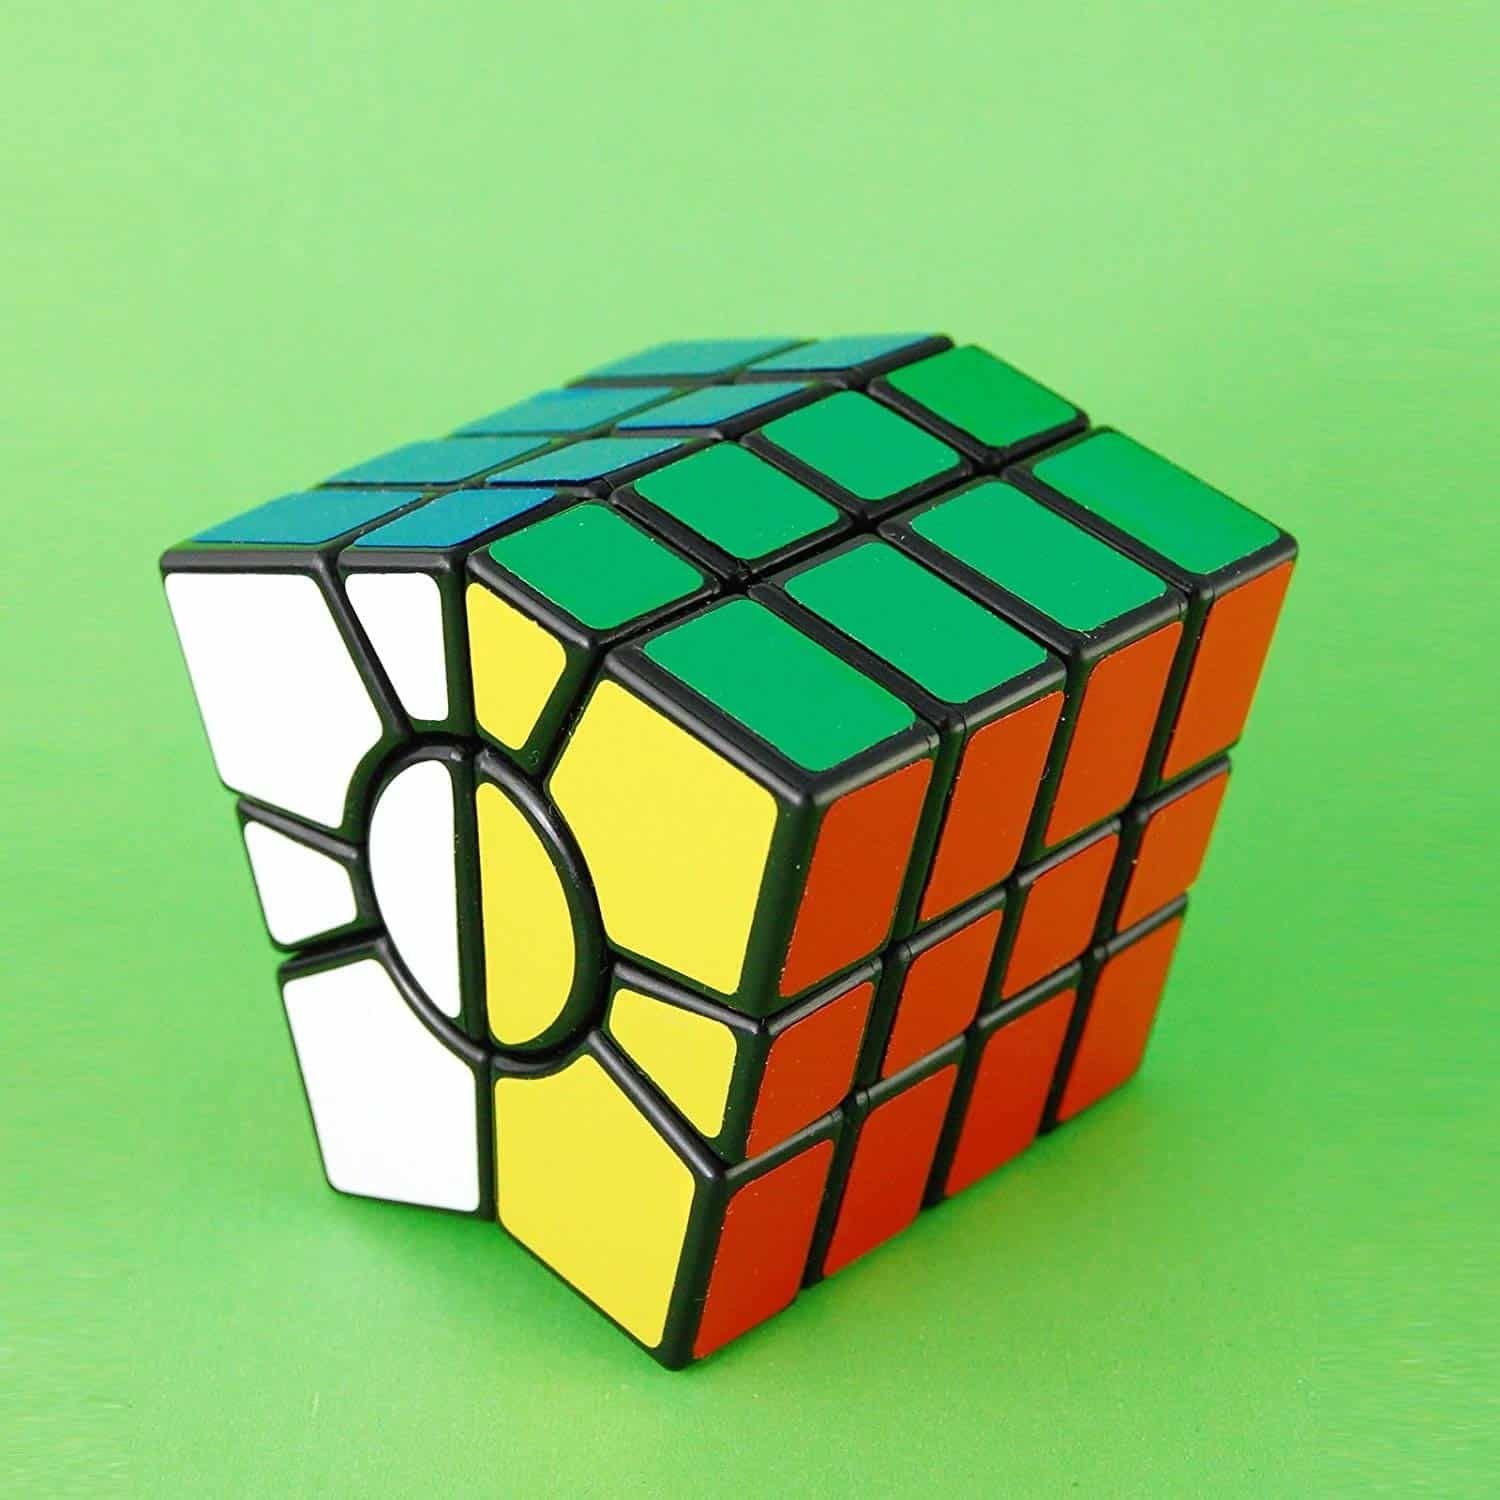 Square cube. Кубик Рубика 23x23. Кубик Рубика ПЕТАМИНКС. Rubix Cube 3x3. 12x12 кубик Рубика.